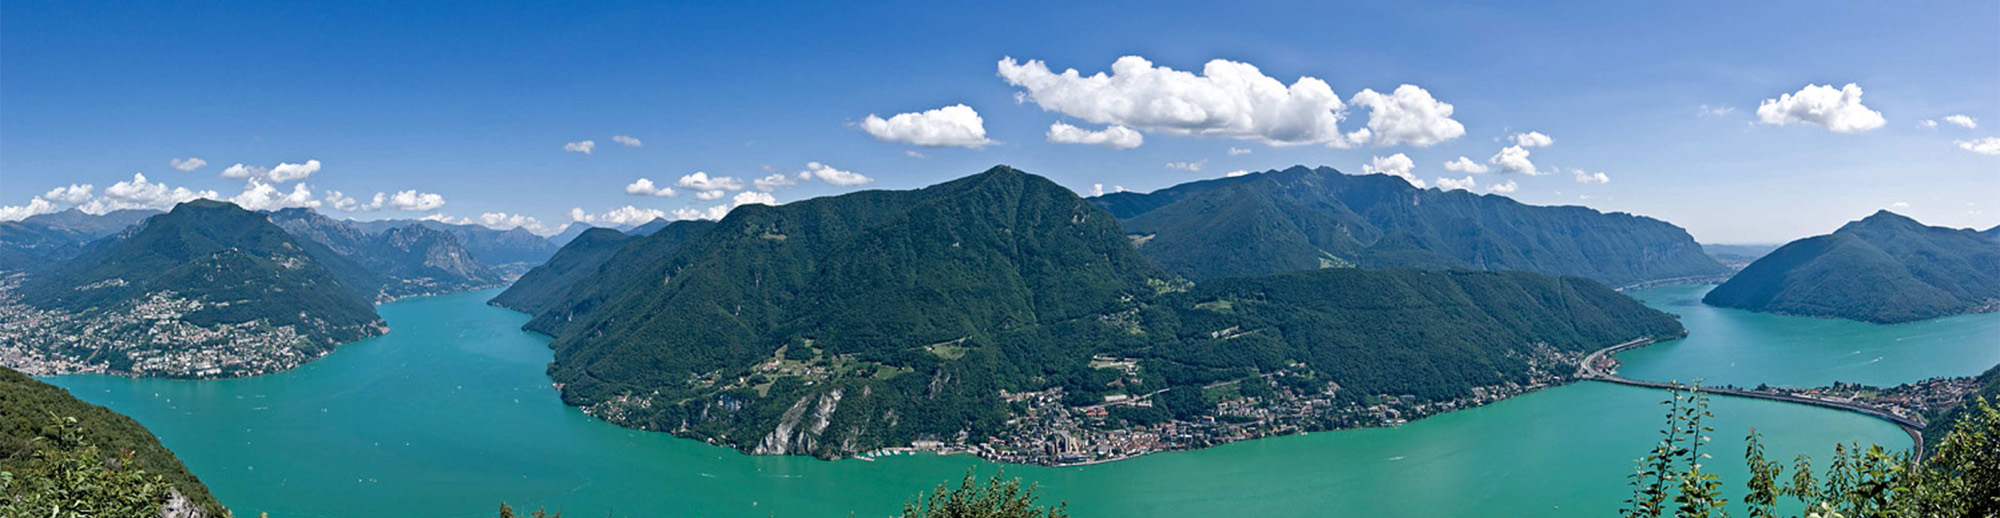 Lago di Lugano e dintorni: vista spettacolare